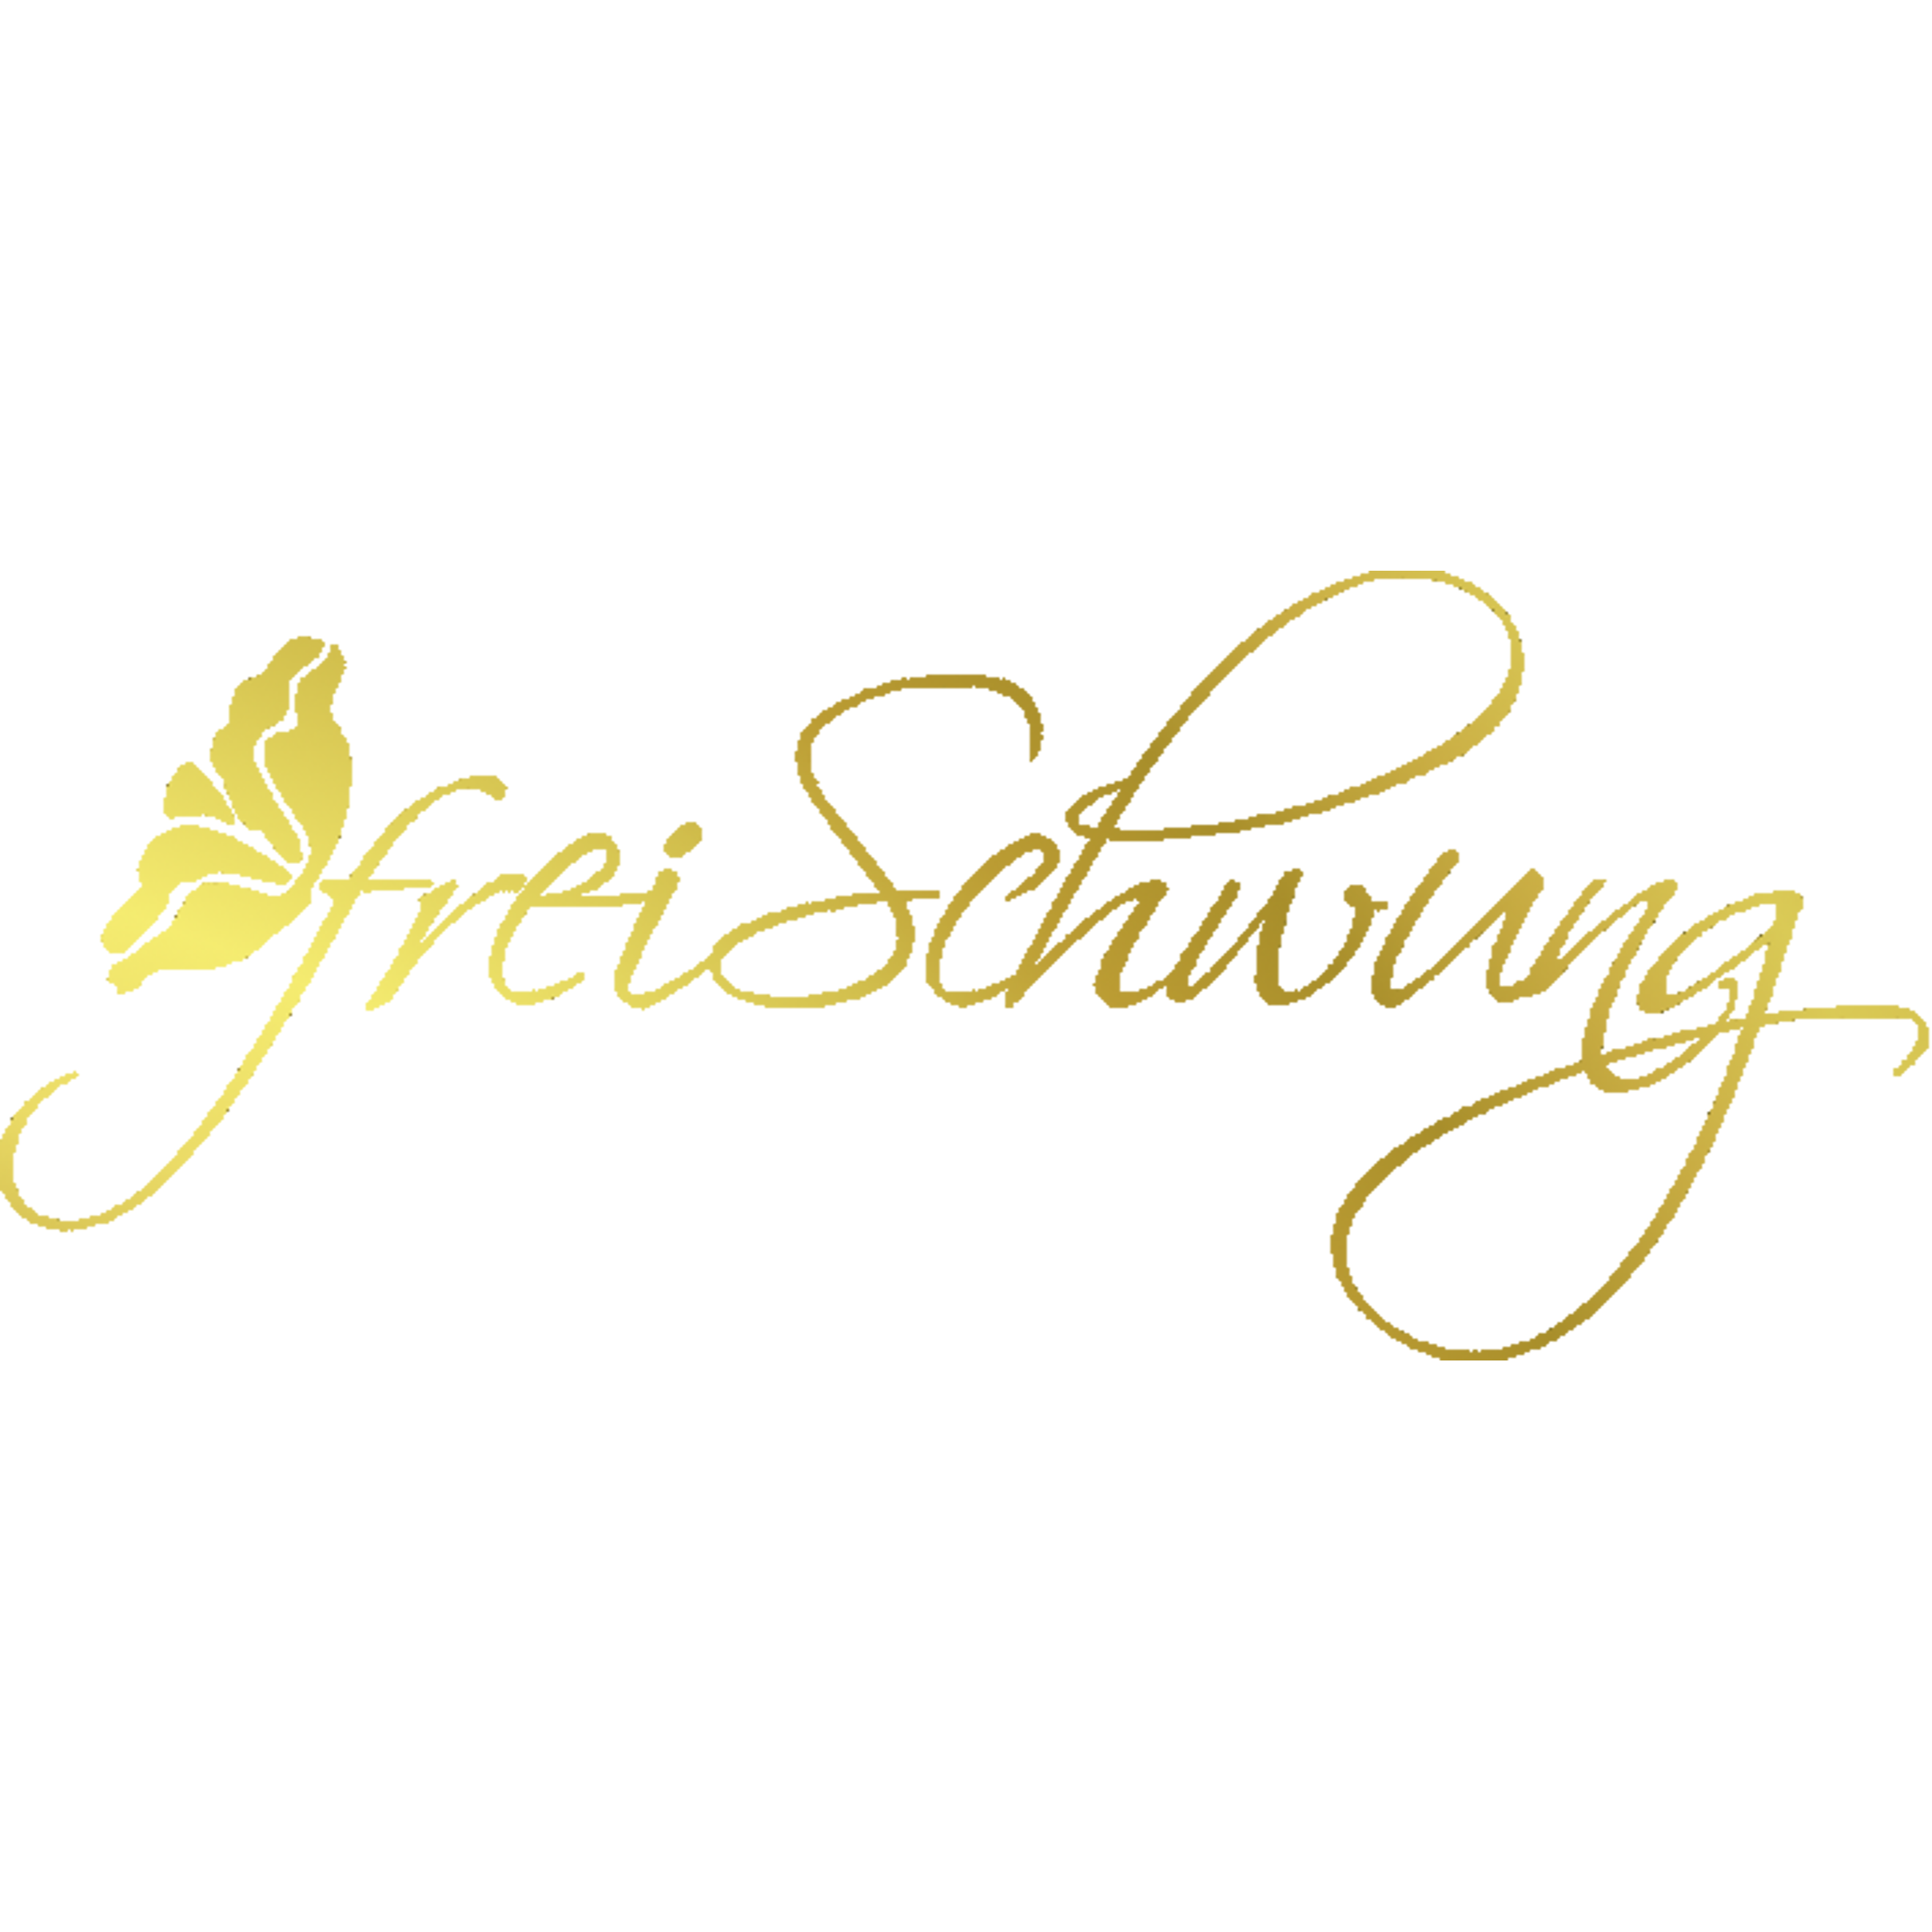 FreiSchwung - Florales Handwerk Inh. Diana Müller in Leipzig - Logo